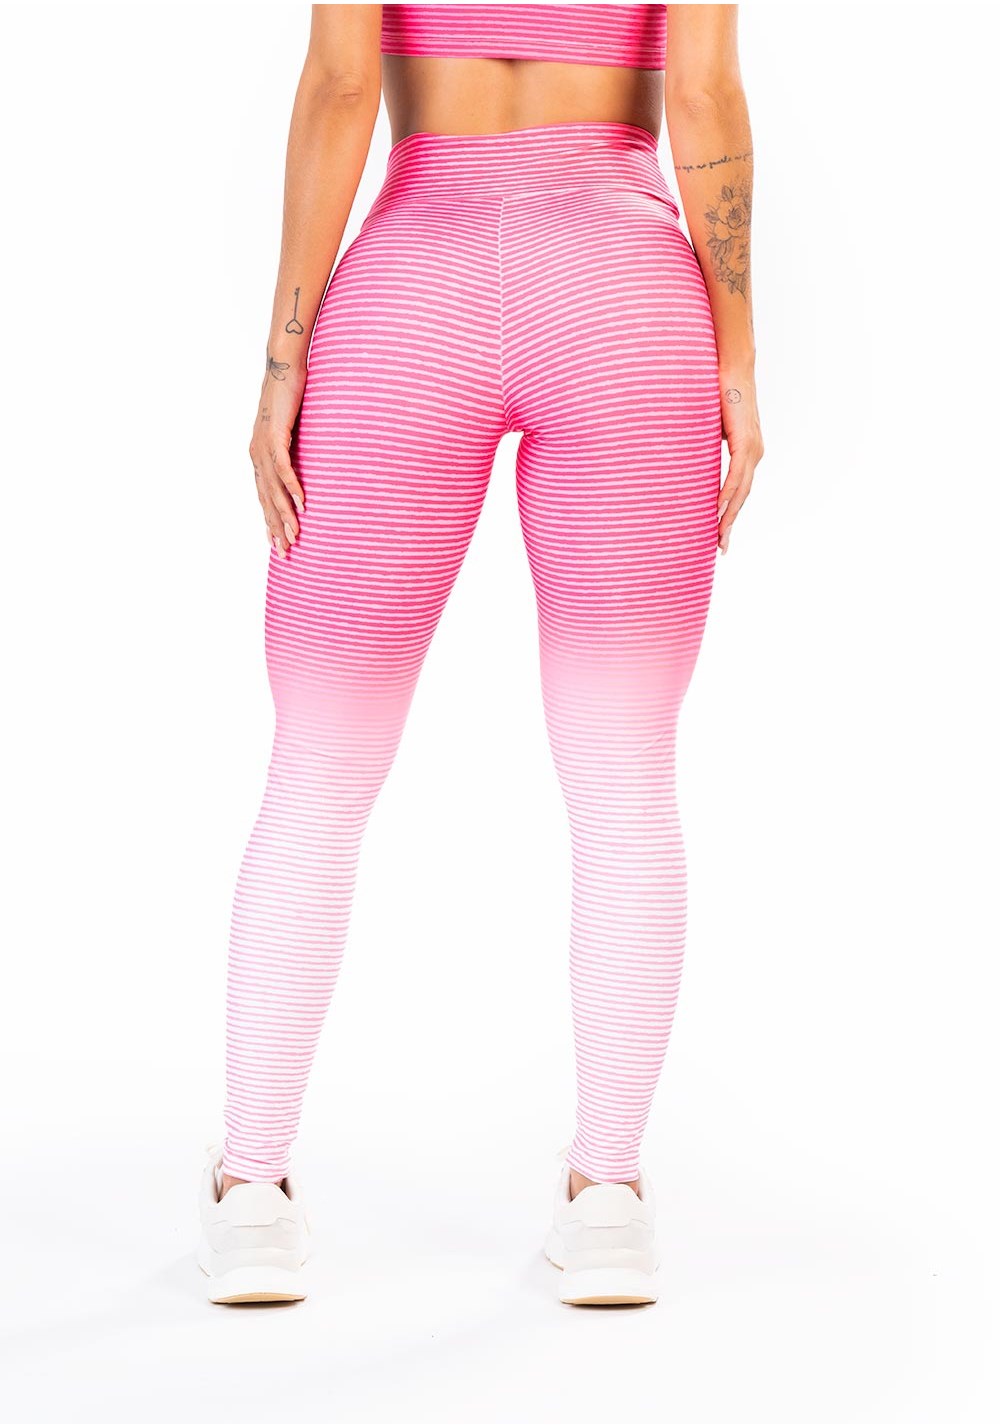 Legging fitness feminina new printed estampada gradil pink